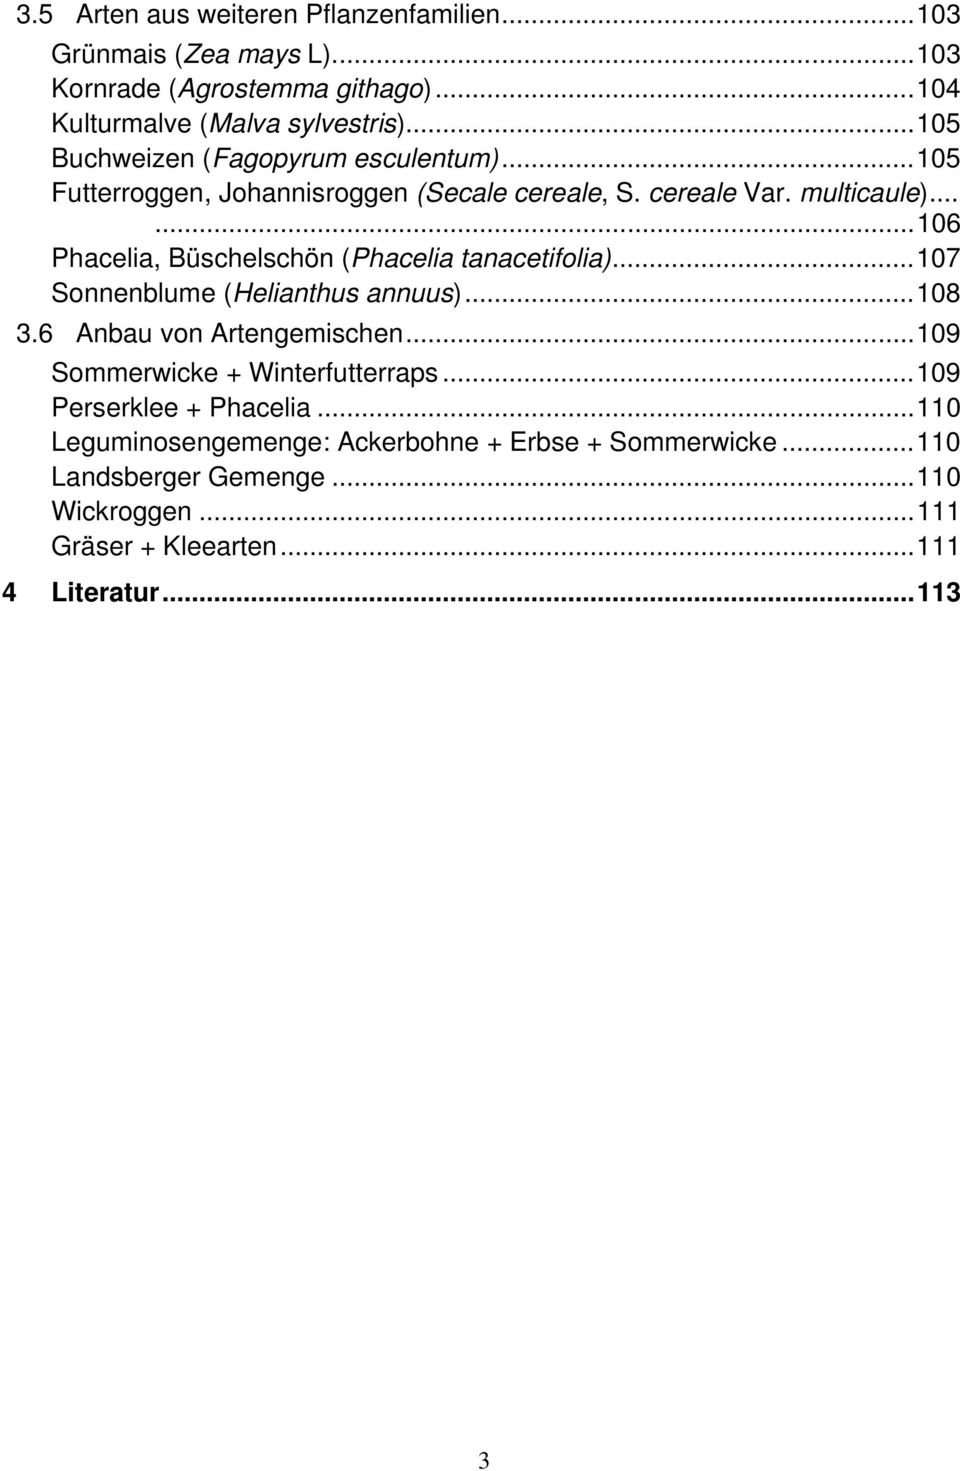 .....106 Phacelia, Büschelschön (Phacelia tanacetifolia)...107 Sonnenblume (Helianthus annuus)...108 3.6 Anbau von Artengemischen.